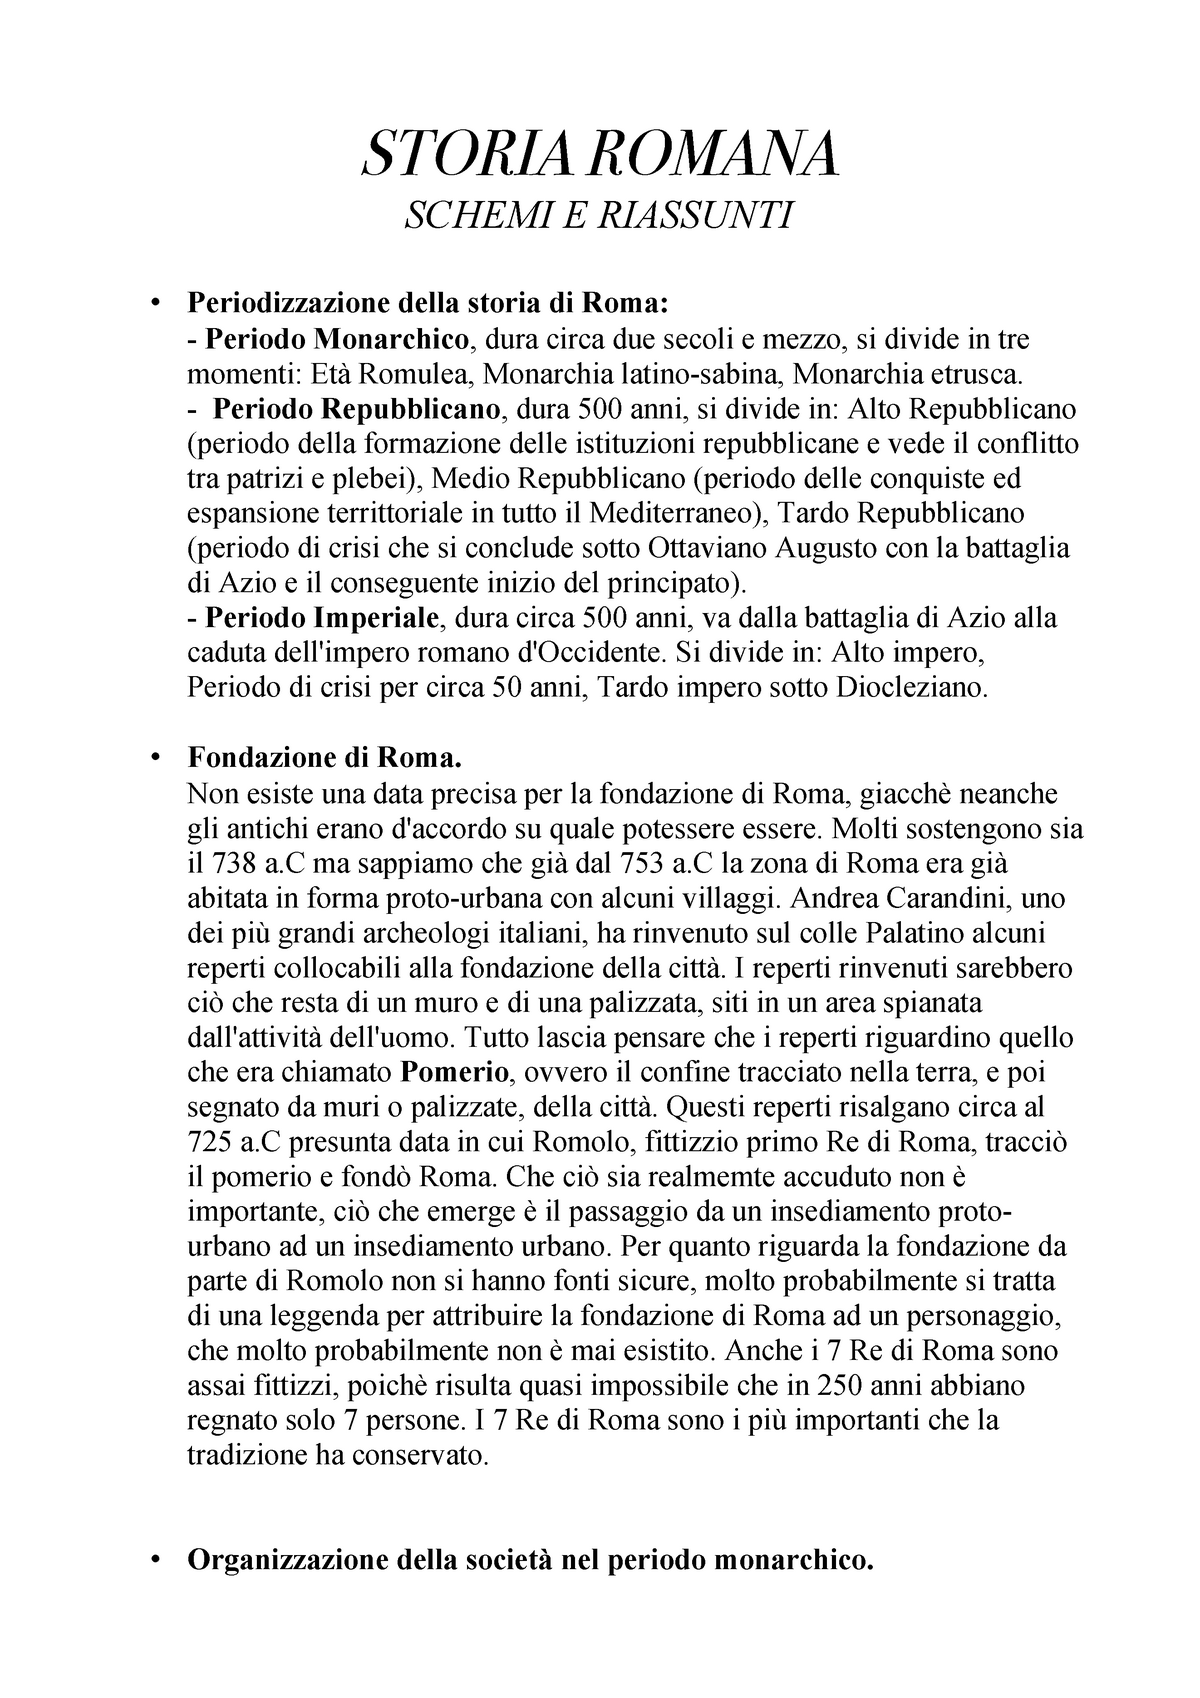 Schemi e Riassunti pdf - Riassunto Storia Romana 1 - STORIA ROMANA SCHEMI E  RIASSUNTI - Studocu